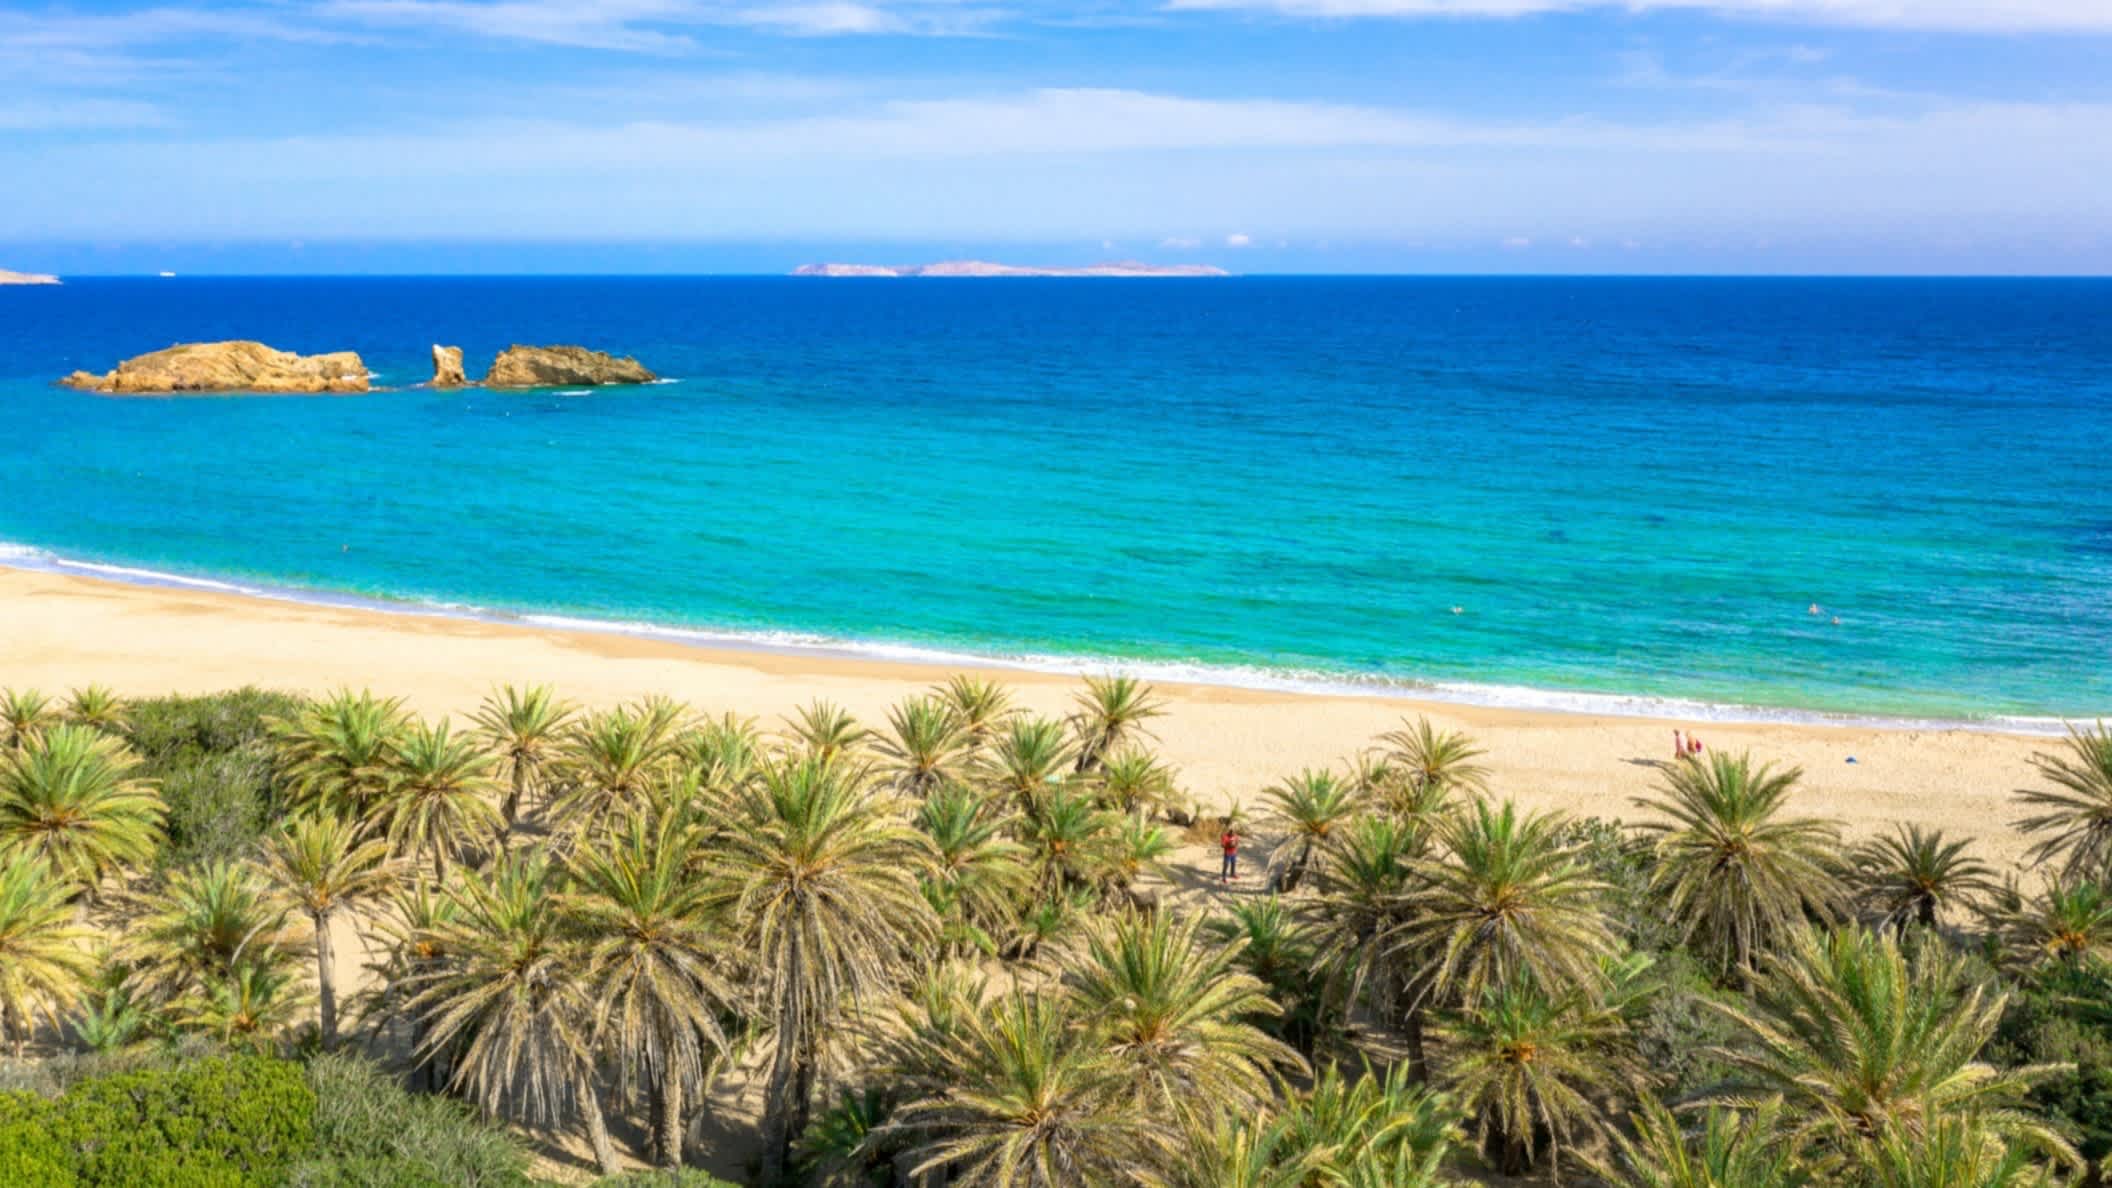 Palmiers devant le sable doré et l'eau turquoise de la plage de Vai, sur l'île de Crète, en Grèce.



